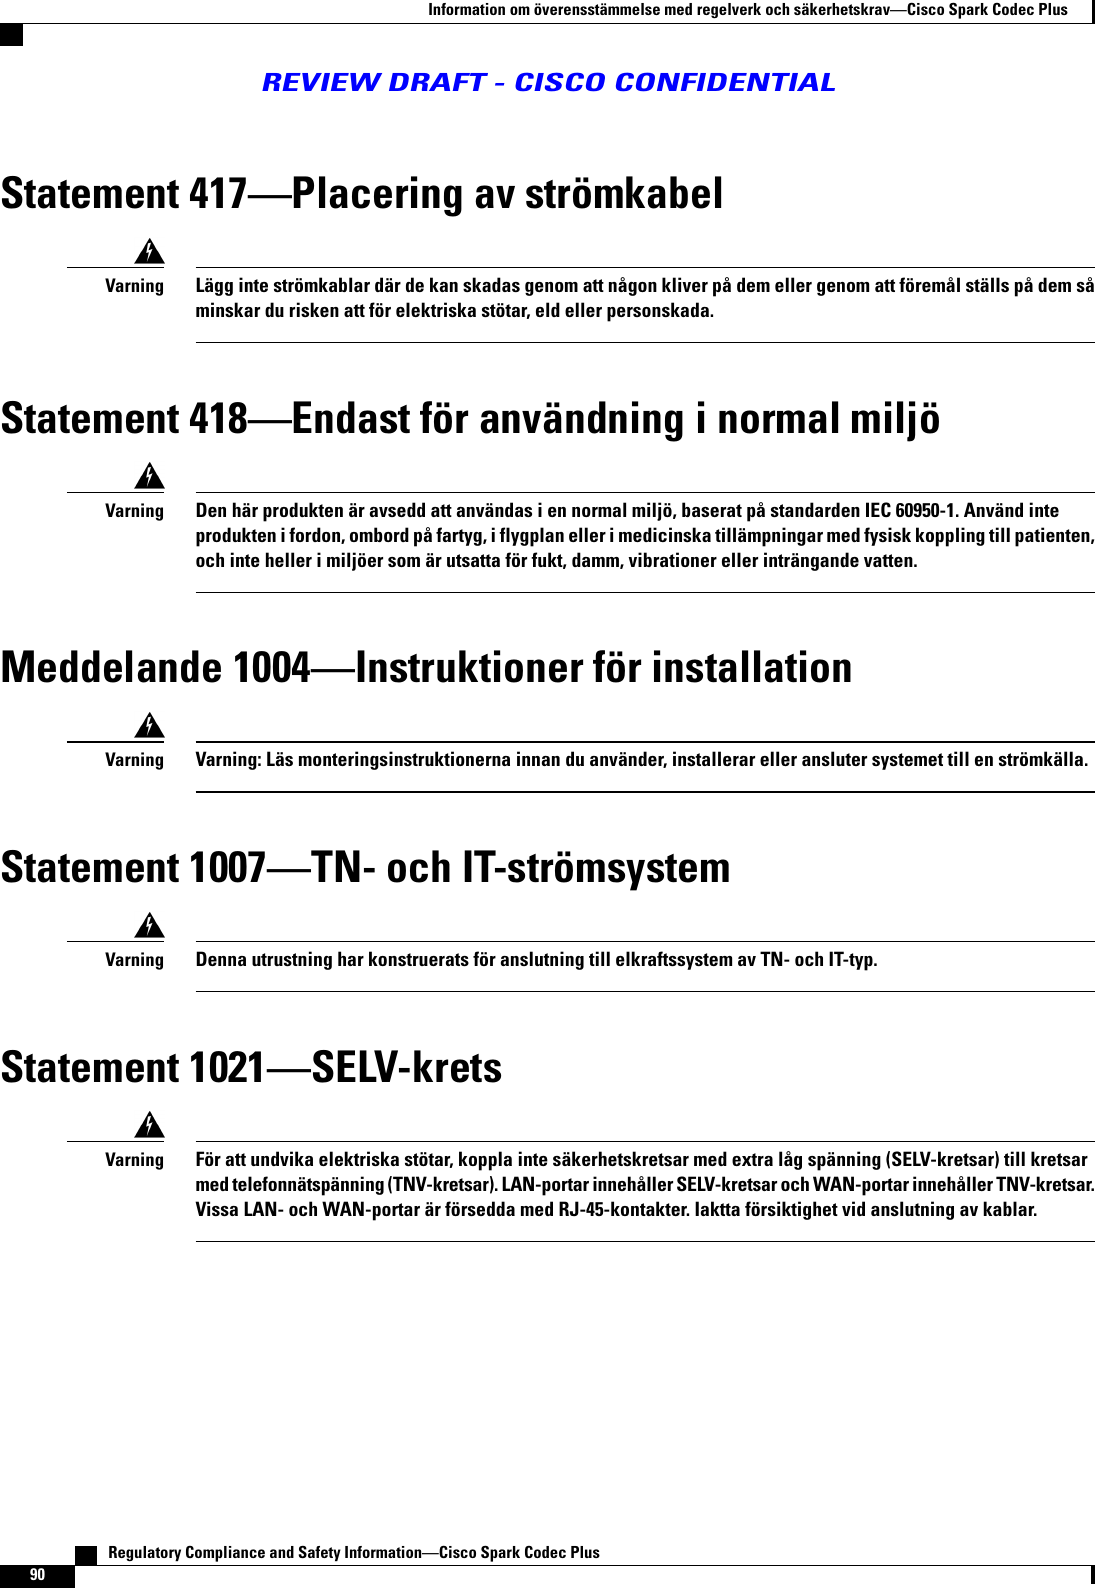 Statement 417Placering av strömkabelLägg inte strömkablar där de kan skadas genom att någon kliver på dem eller genom att föremål ställs på dem såminskar du risken att för elektriska stötar, eld eller personskada.VarningStatement 418Endast för användning i normal miljöDen här produkten är avsedd att användas i en normal miljö, baserat på standarden IEC 60950-1. Använd inteprodukten i fordon, ombord på fartyg, i flygplan eller i medicinska tillämpningar med fysisk koppling till patienten,och inte heller i miljöer som är utsatta för fukt, damm, vibrationer eller inträngande vatten.VarningMeddelande 1004Instruktioner för installationVarning: Läs monteringsinstruktionerna innan du använder, installerar eller ansluter systemet till en strömkälla.VarningStatement 1007TN- och IT-strömsystemDenna utrustning har konstruerats för anslutning till elkraftssystem av TN- och IT-typ.VarningStatement 1021SELV-kretsFör att undvika elektriska stötar, koppla inte säkerhetskretsar med extra låg spänning (SELV-kretsar) till kretsarmed telefonnätspänning (TNV-kretsar). LAN-portar innehåller SELV-kretsar och WAN-portar innehåller TNV-kretsar.Vissa LAN- och WAN-portar är försedda med RJ-45-kontakter. Iaktta försiktighet vid anslutning av kablar.Varning   Regulatory Compliance and Safety InformationCisco Spark Codec Plus90Information om överensstämmelse med regelverk och säkerhetskravCisco Spark Codec PlusREVIEW DRAFT - CISCO CONFIDENTIAL